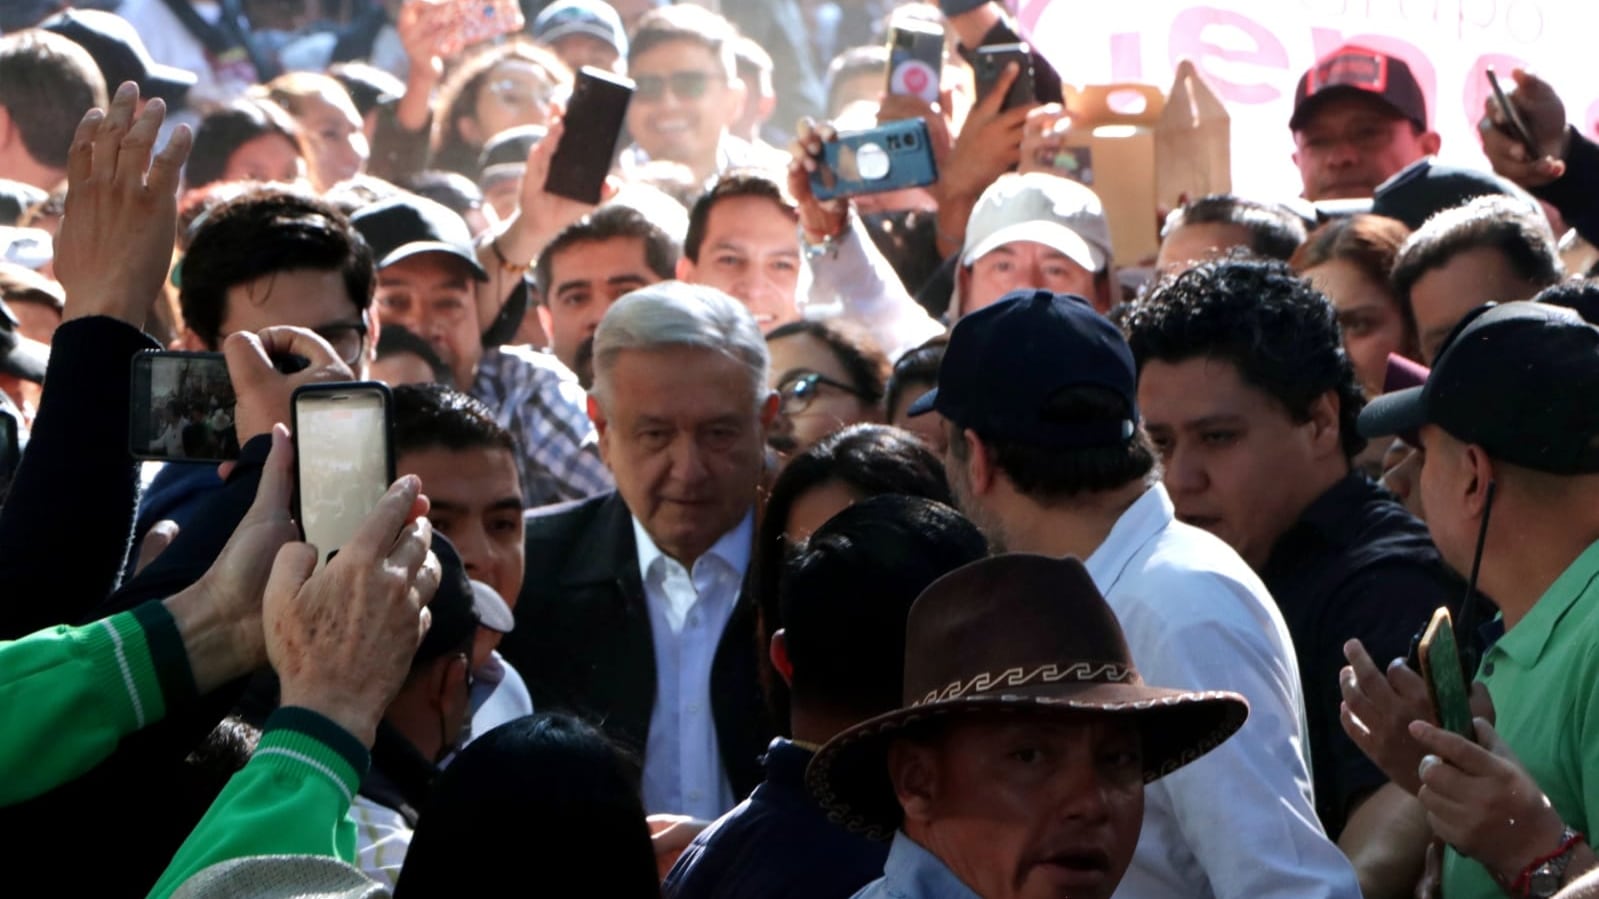 Los simpatizantes querían tocar al presidente de México. (Ángel Cruz/ Publimetro)